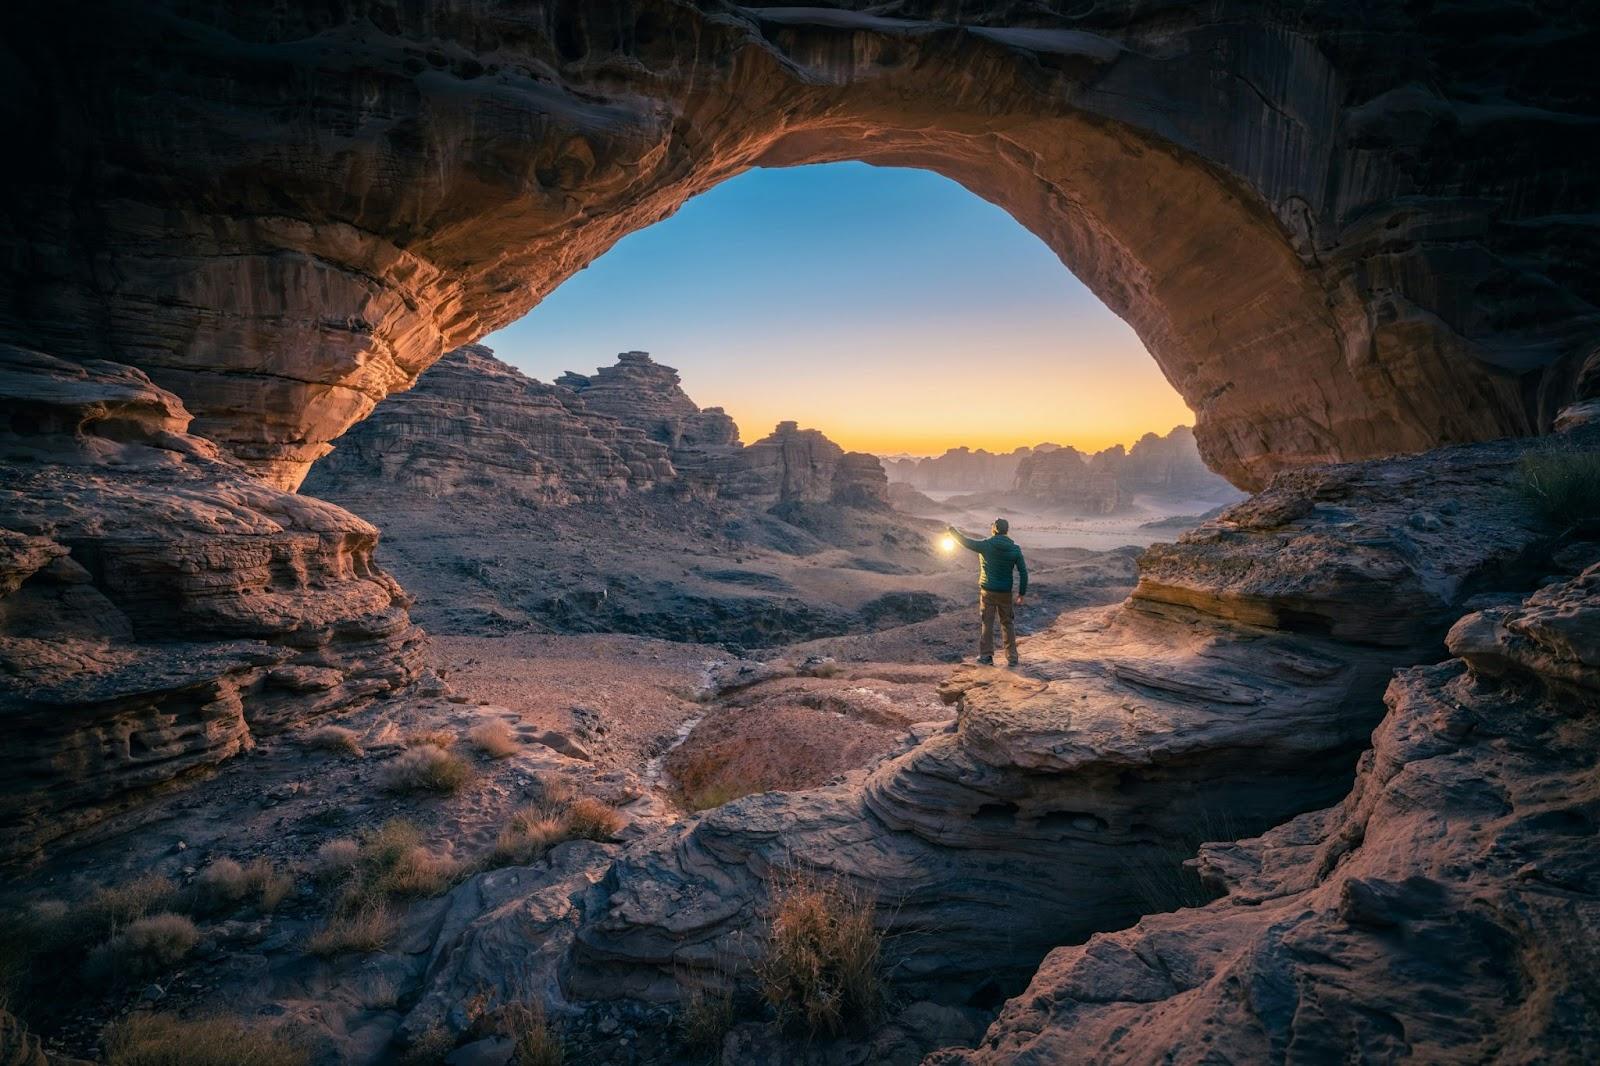 Natural rock bridge in the Hisma Desert – NEOM, Saudi Arabia